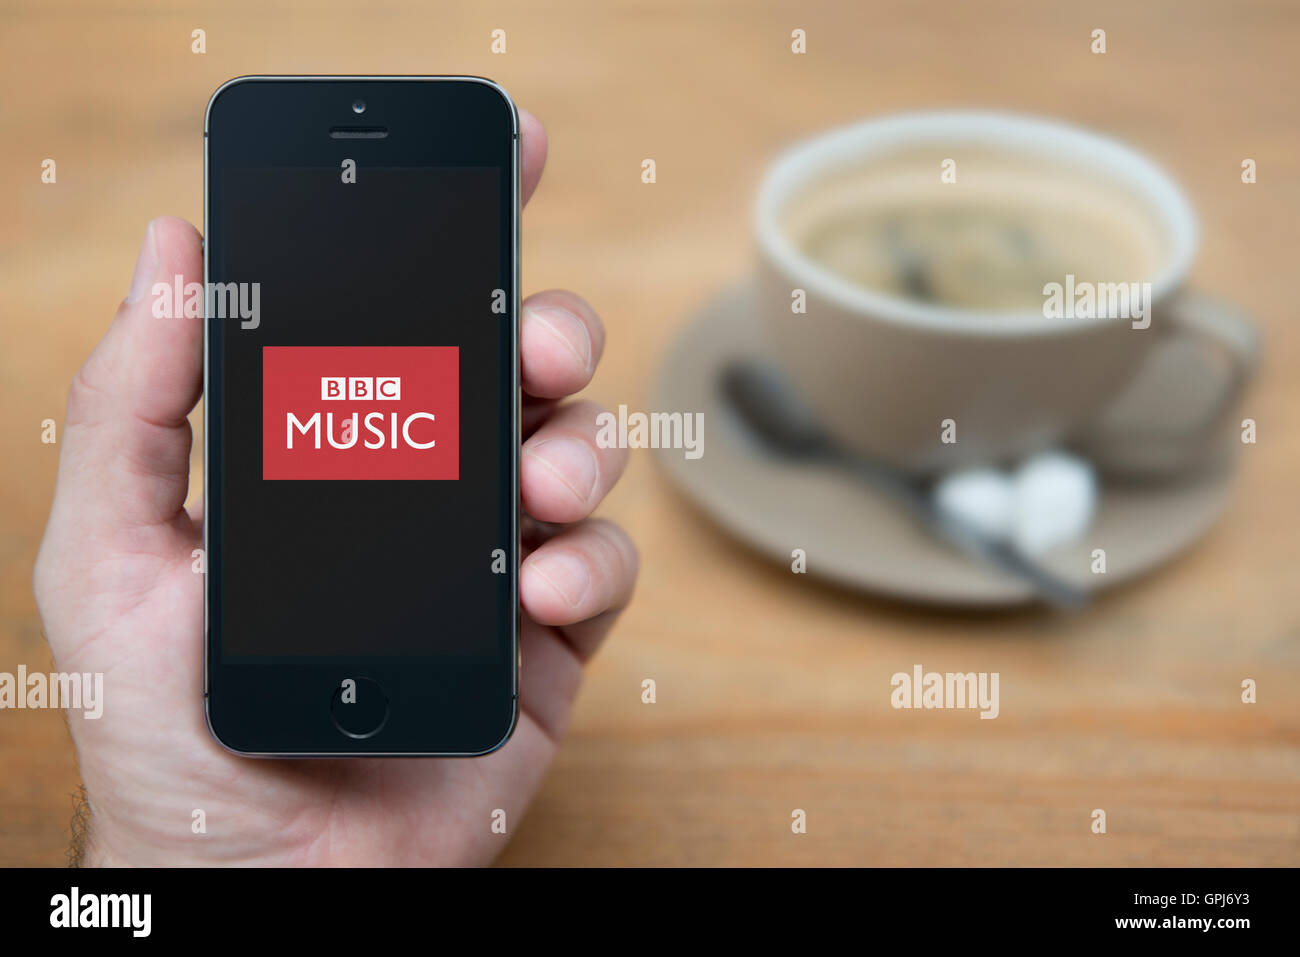 Un uomo guarda al suo iPhone che visualizza la BBC Music logo, mentre sat con una tazza di caffè (solo uso editoriale). Foto Stock